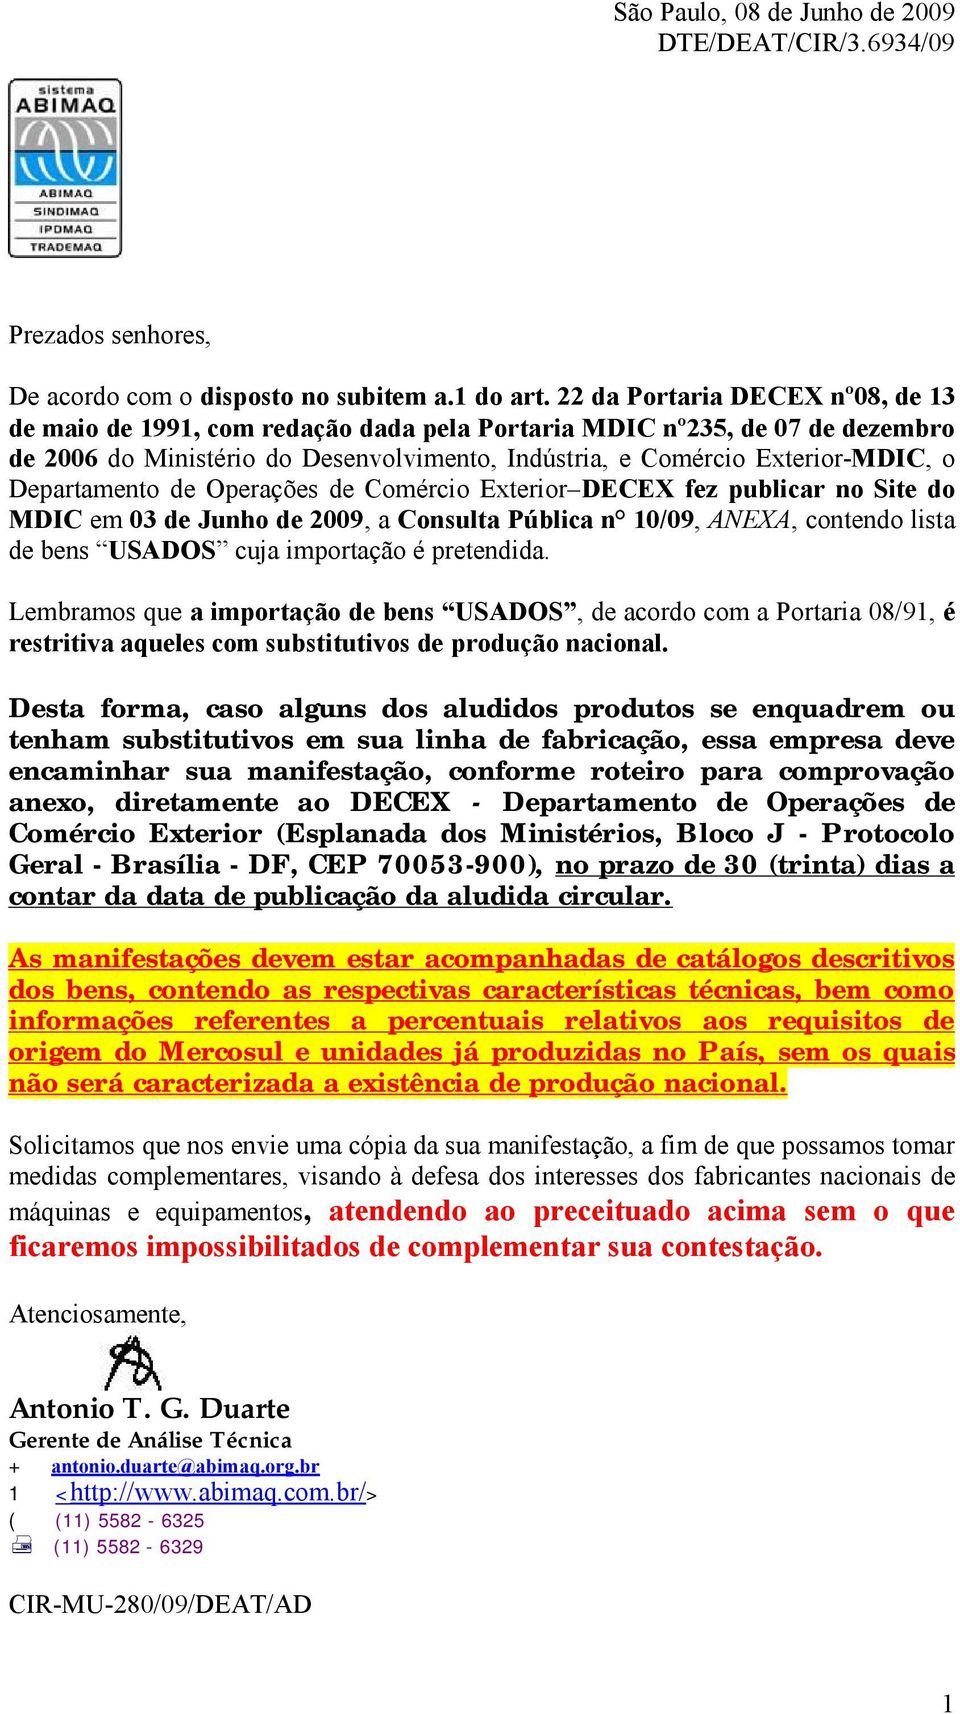 Departamento de Operações de Comércio Exterior DECEX fez publicar no Site do MDIC em 03 de Junho de 2009, a Consulta Pública n 10/09, ANEXA, contendo lista de bens USADOS cuja importação é pretendida.